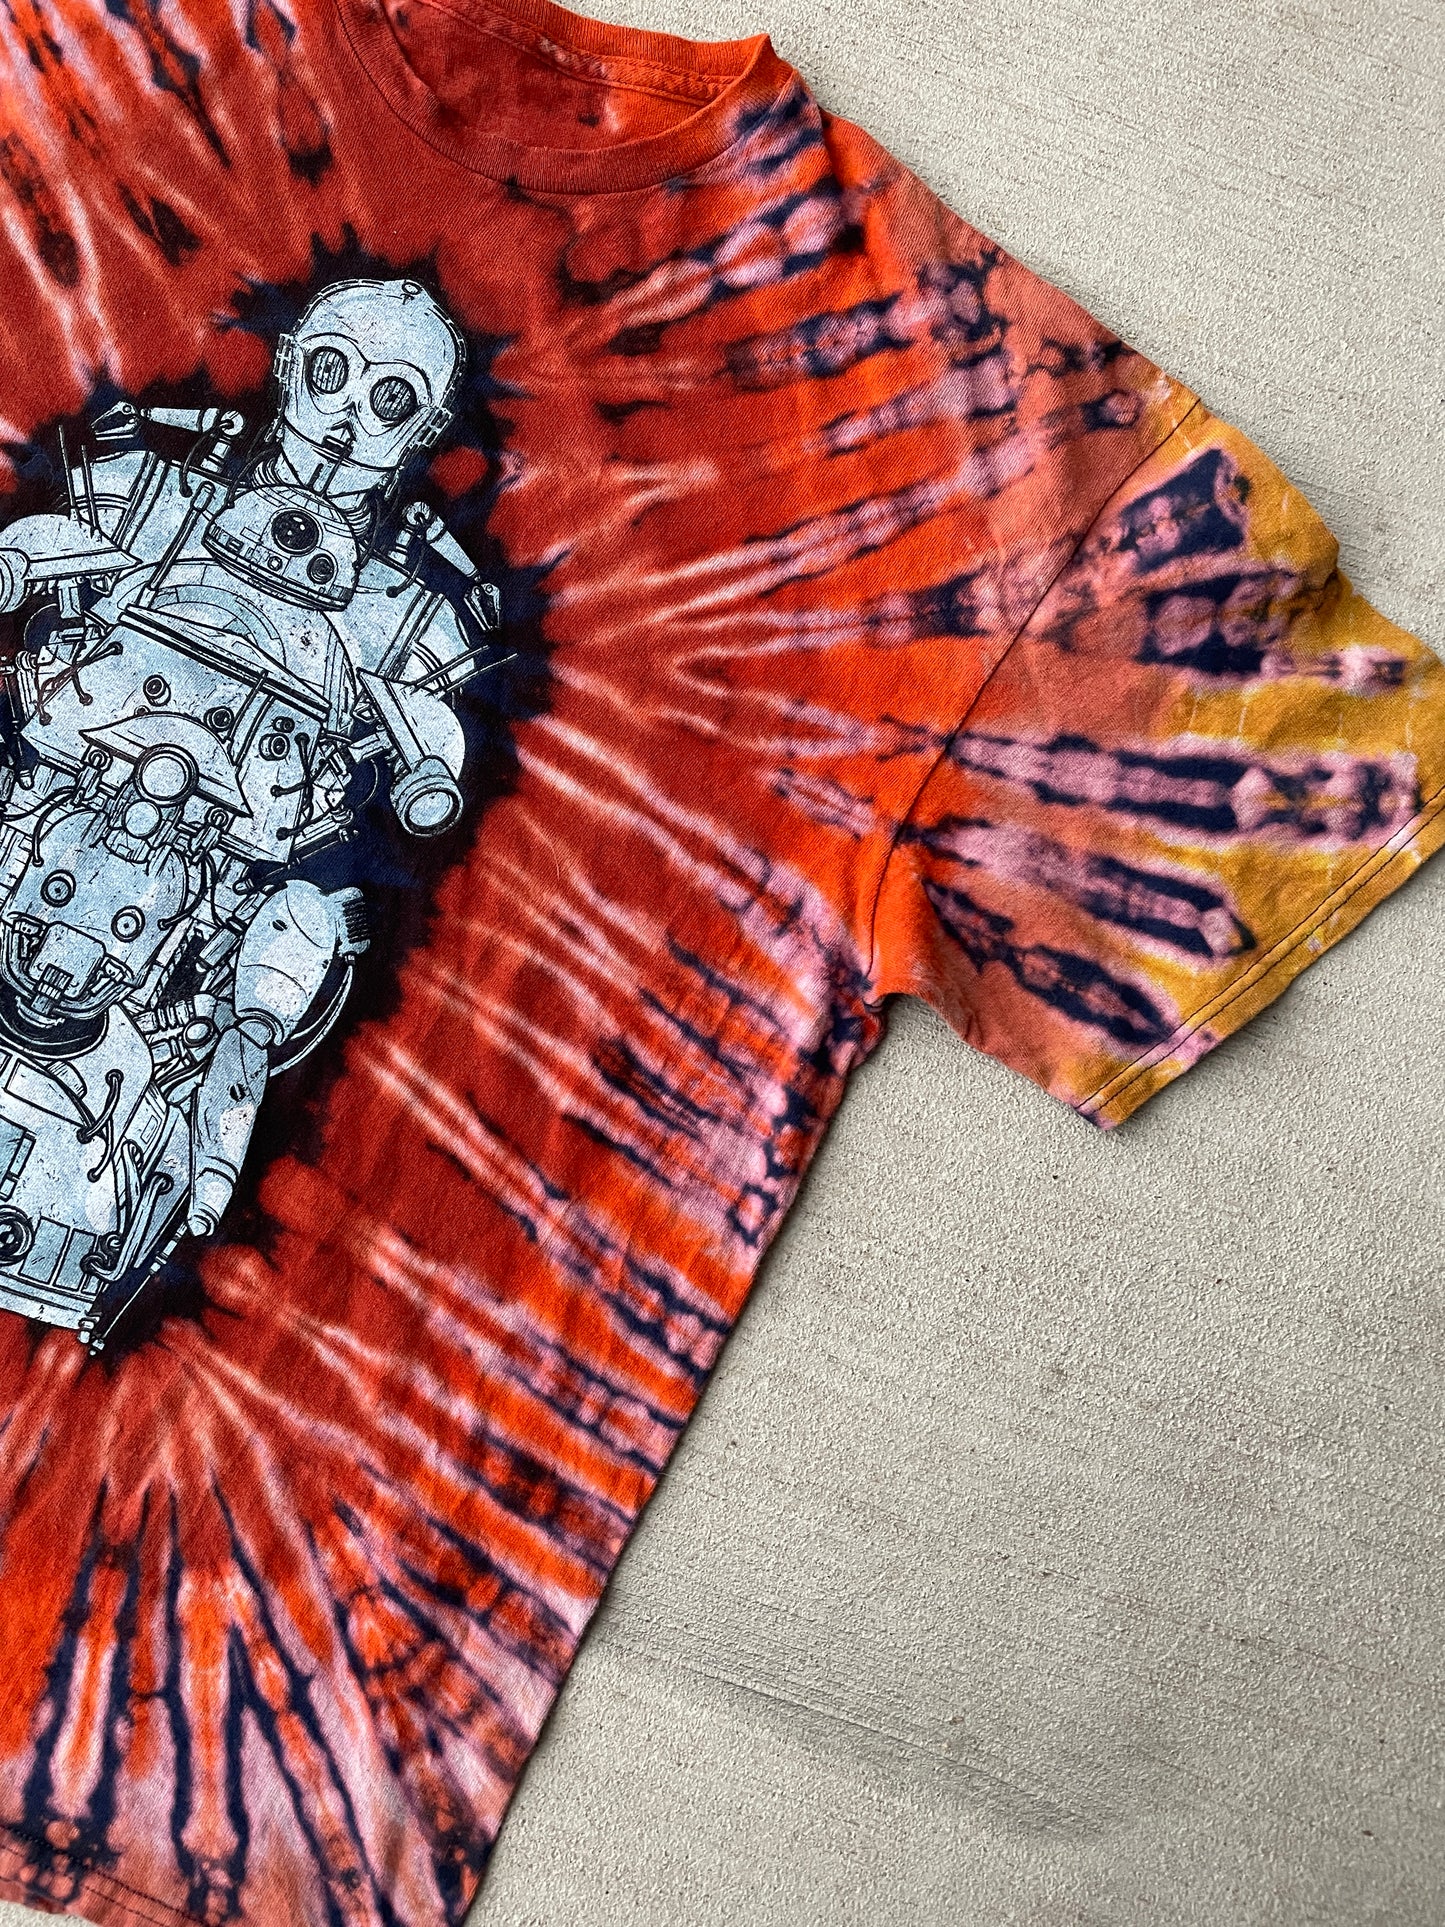 XL Men’s Star Wars Bots Handmade Tie Dye T-Shirt | Warm Earth Tones Reverse Tie Dye Short Sleeve